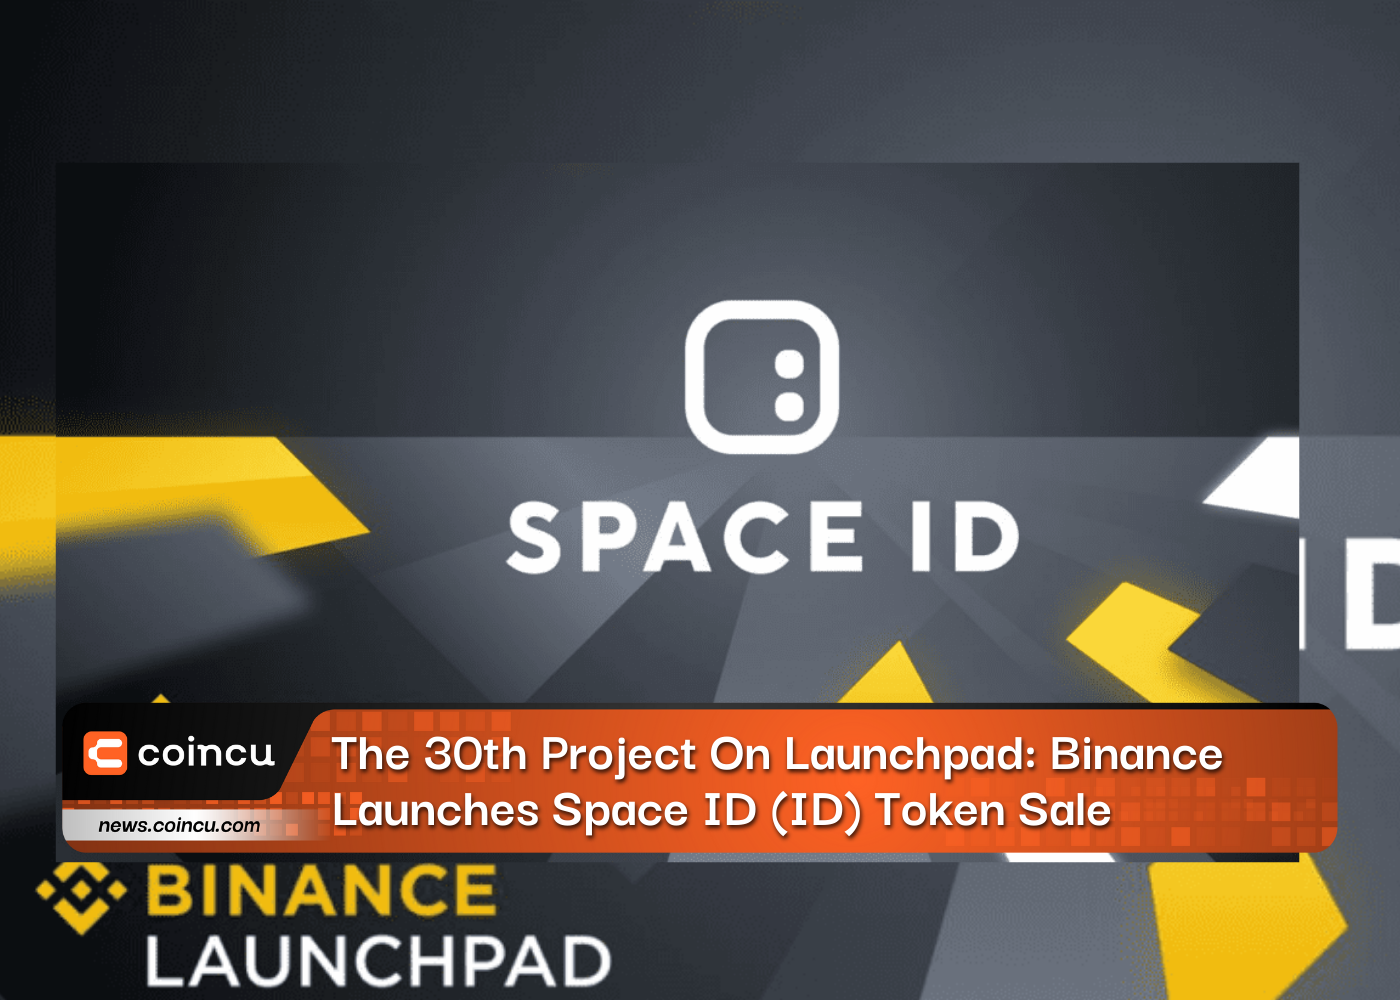 Das 30. Projekt auf Launchpad: Binance startet Space ID (ID)-Token-Verkauf